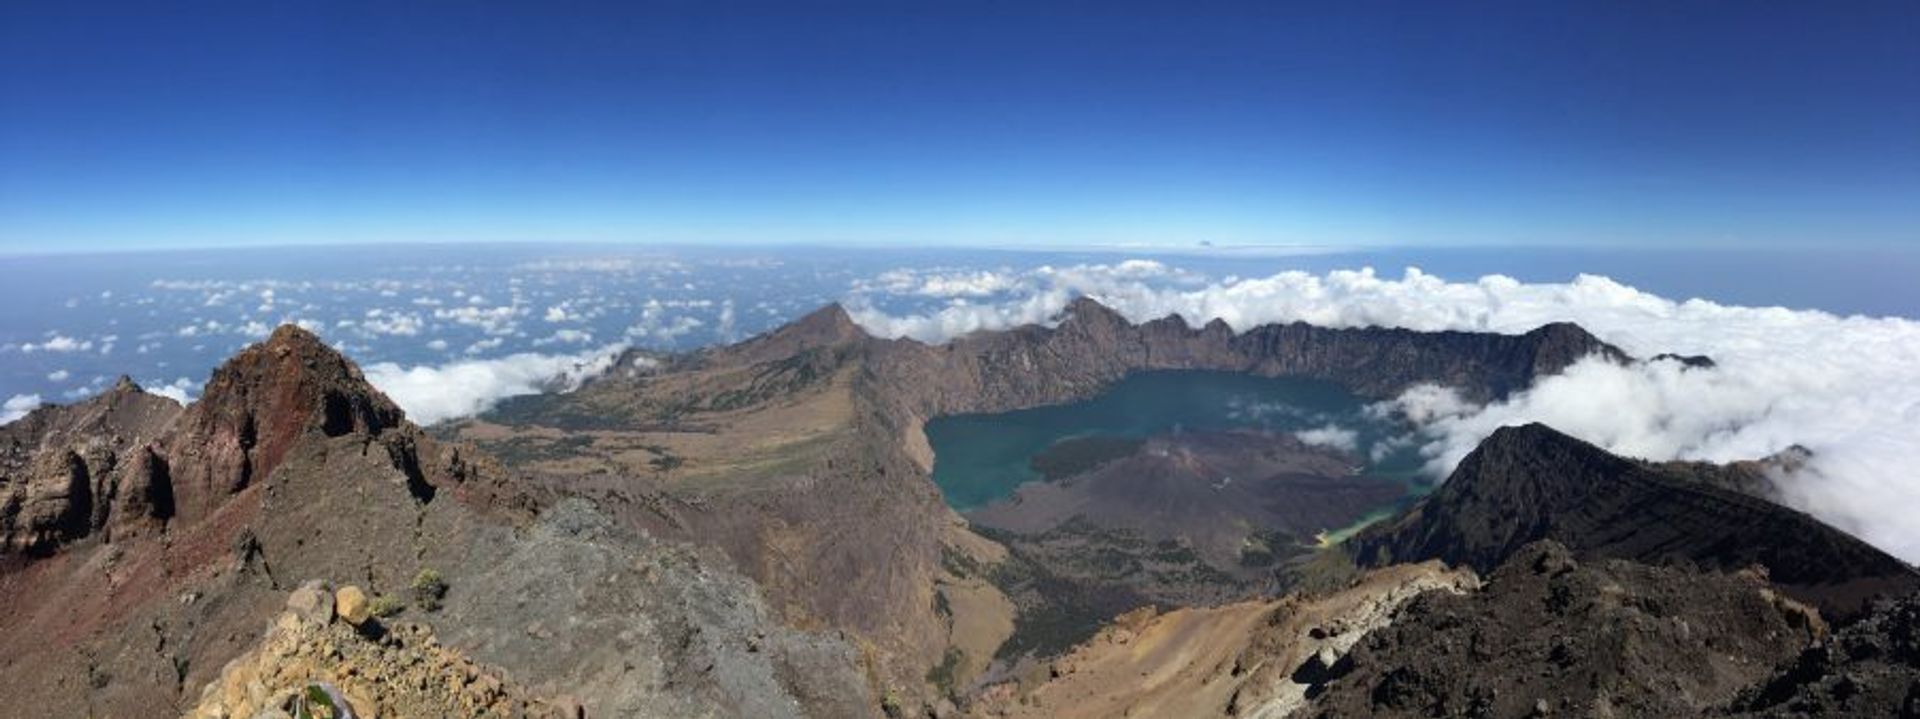 Gunung Rinjani in Indonesia (3726m). Photo by Philipe Gunawan